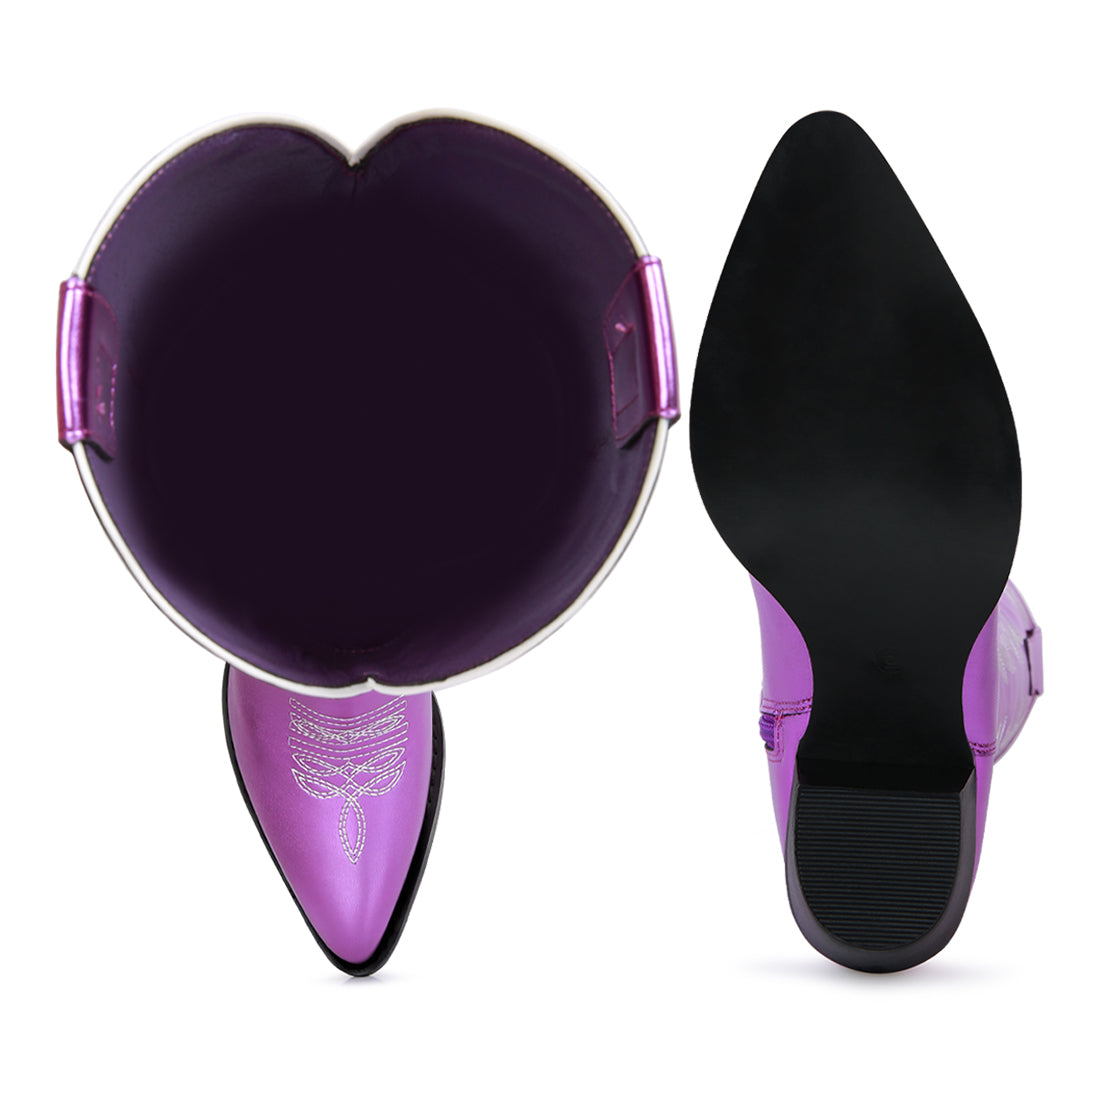 priscilla pointed toe boot#color_purple